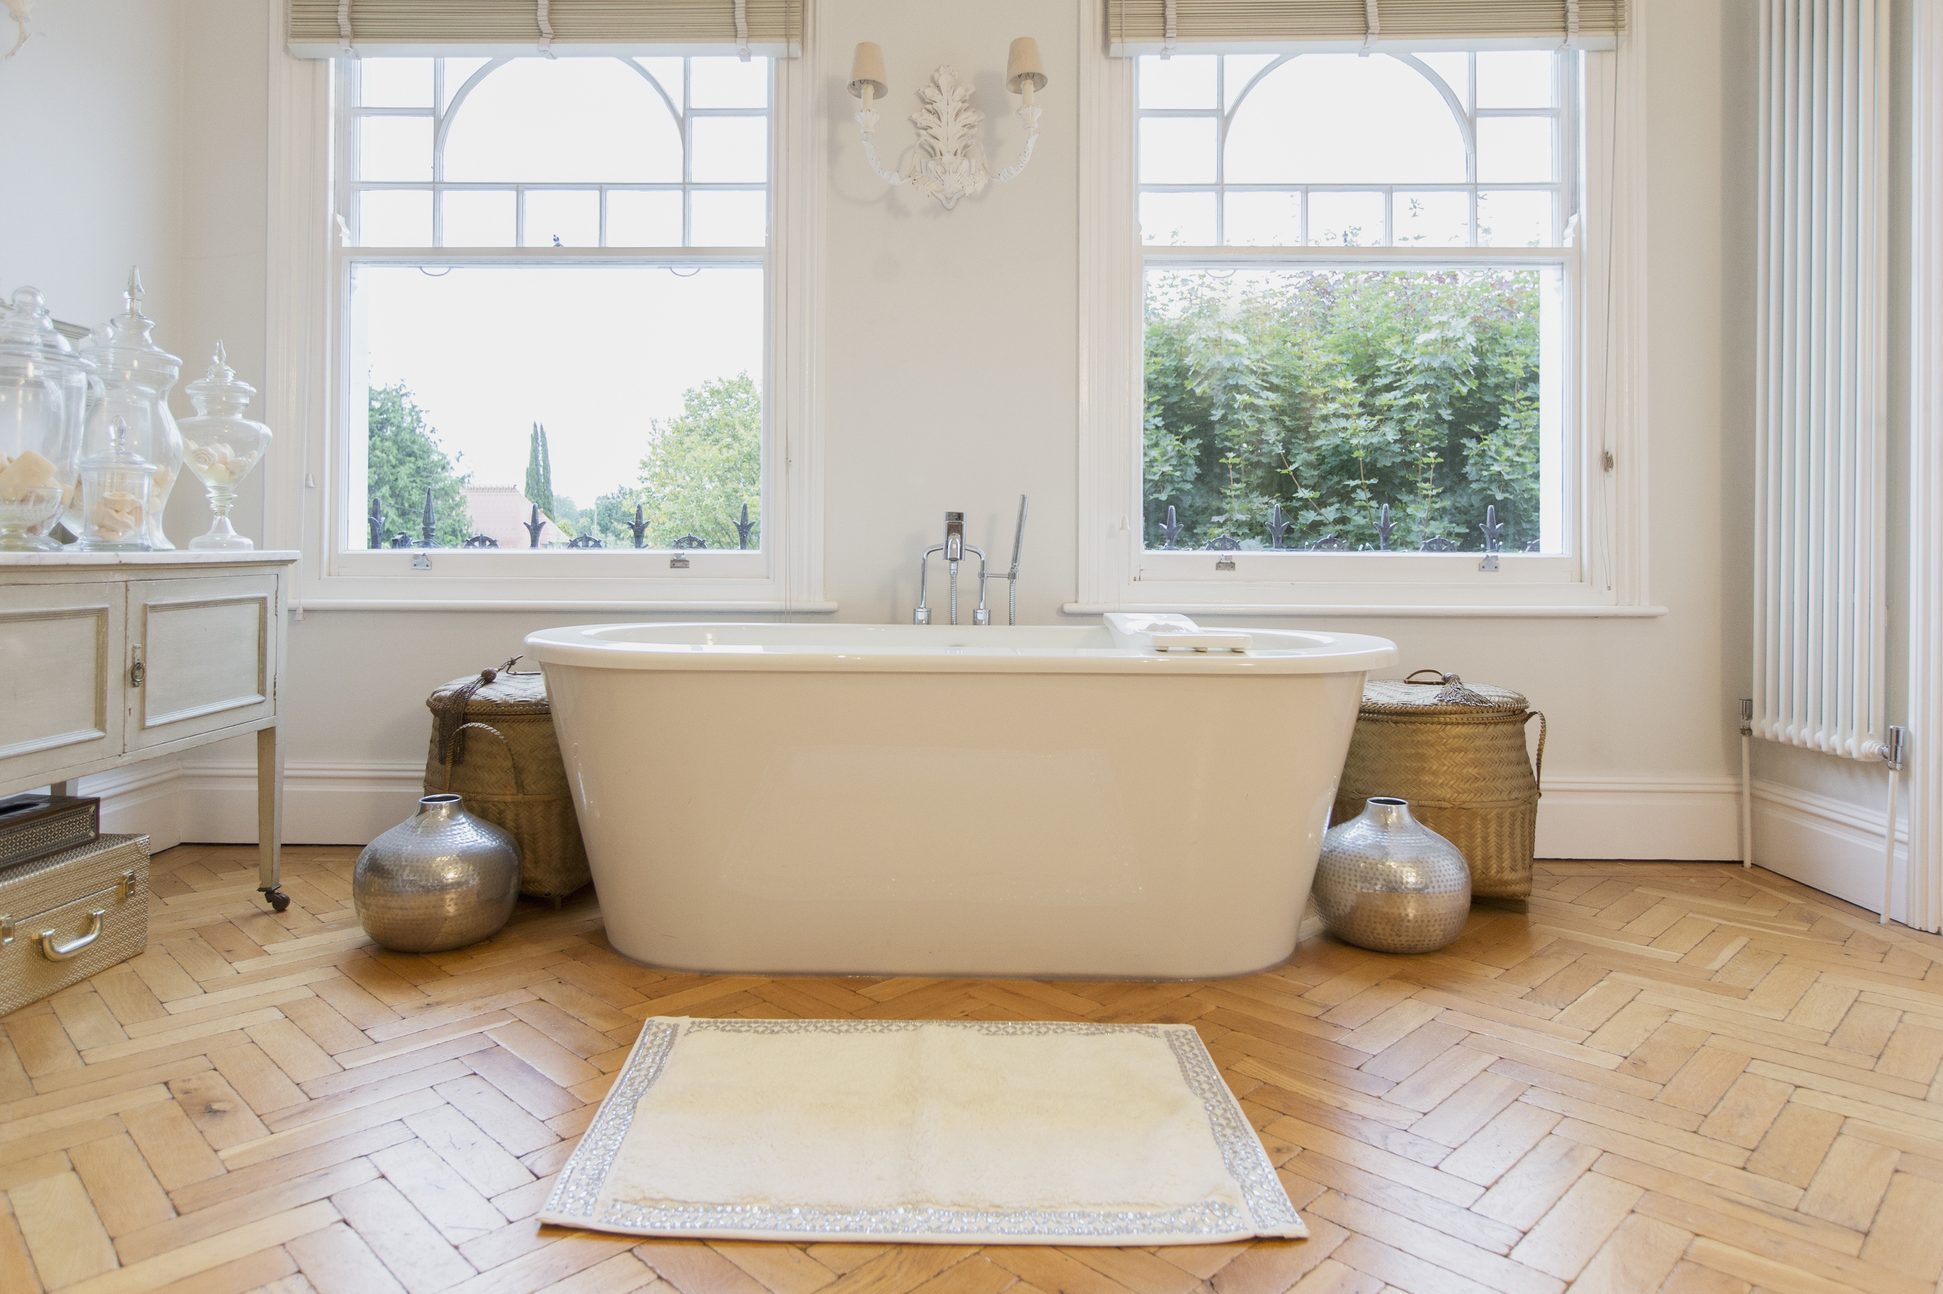 家庭展示室内浴缸和拼花地板